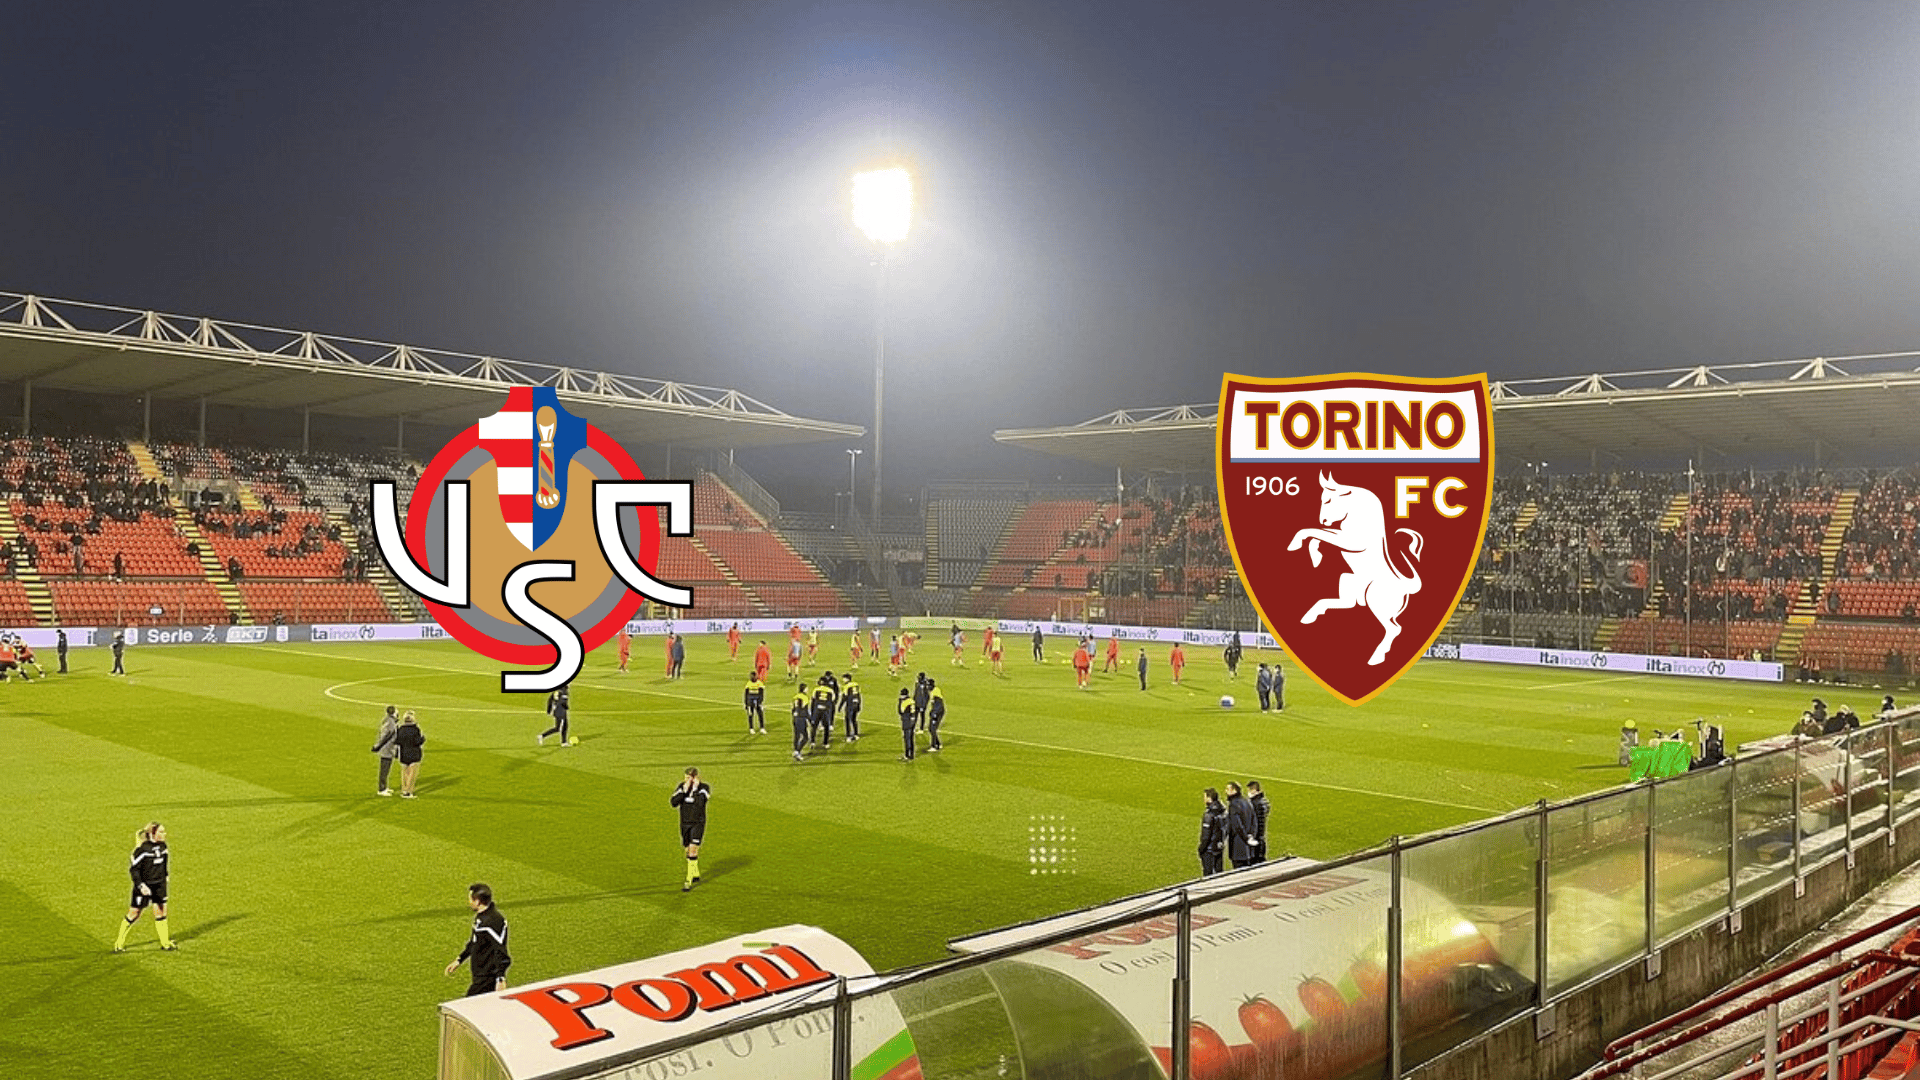 FC Turino x Cremonese » Placar ao vivo, Palpites, Estatísticas + Odds